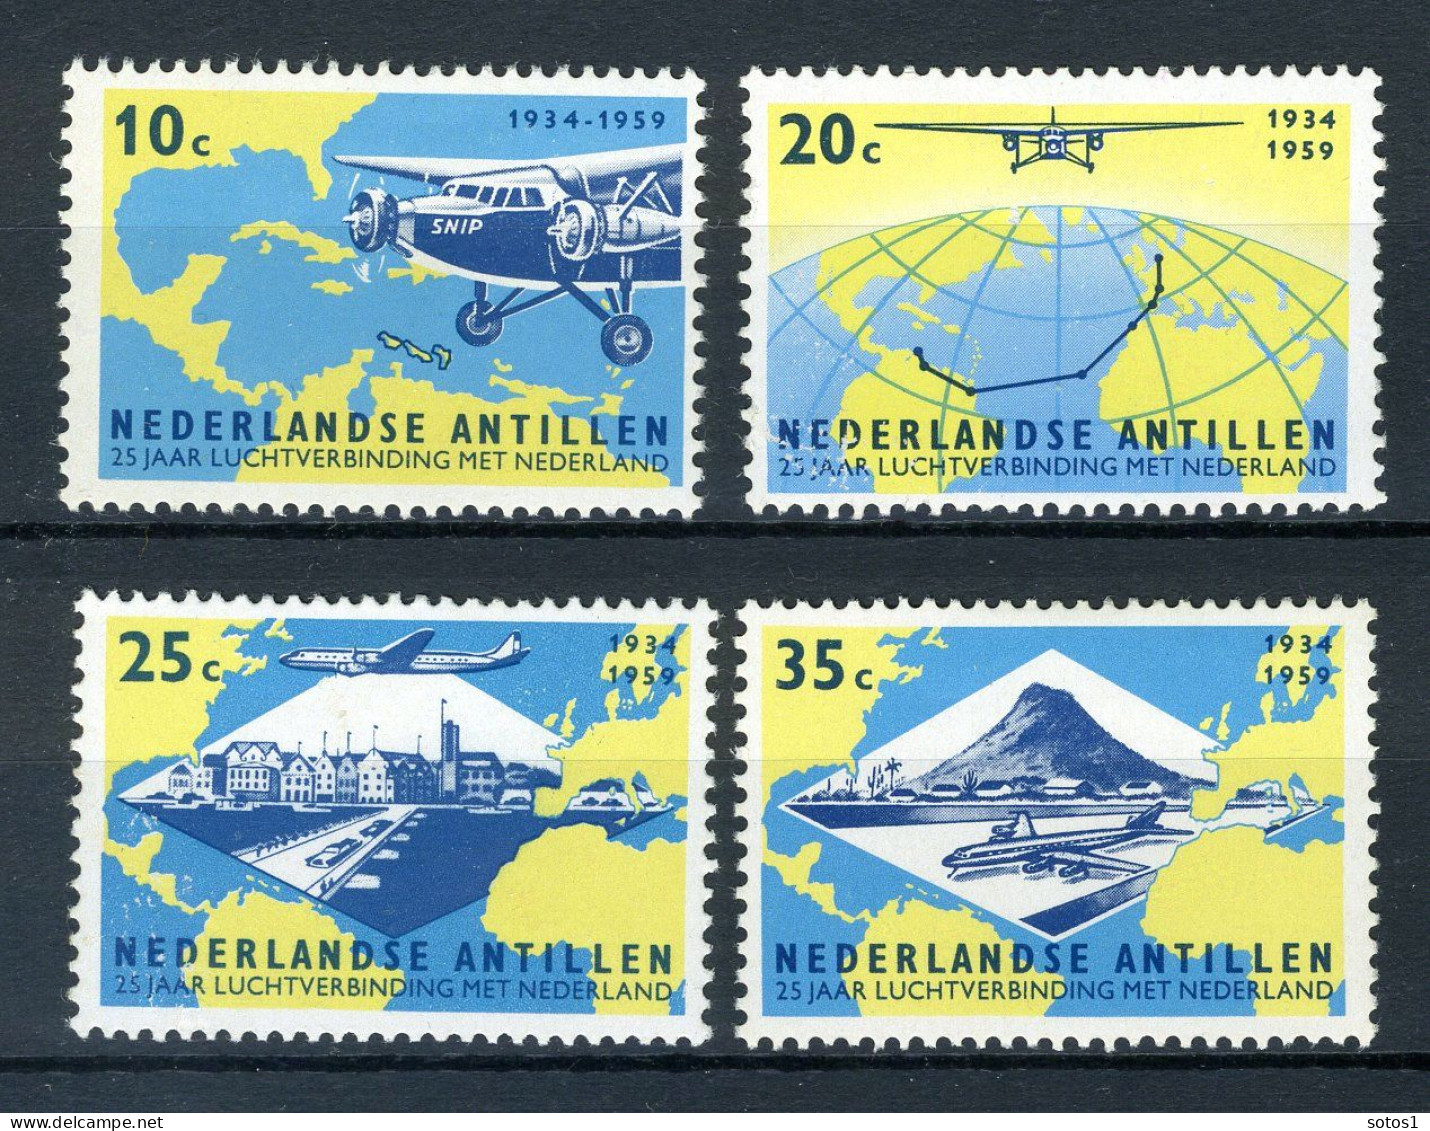 NL. ANTILLEN 307/310 MH 1959 - 25 Jaar Luchtverbinding Met Nederland. - Curaçao, Antilles Neérlandaises, Aruba